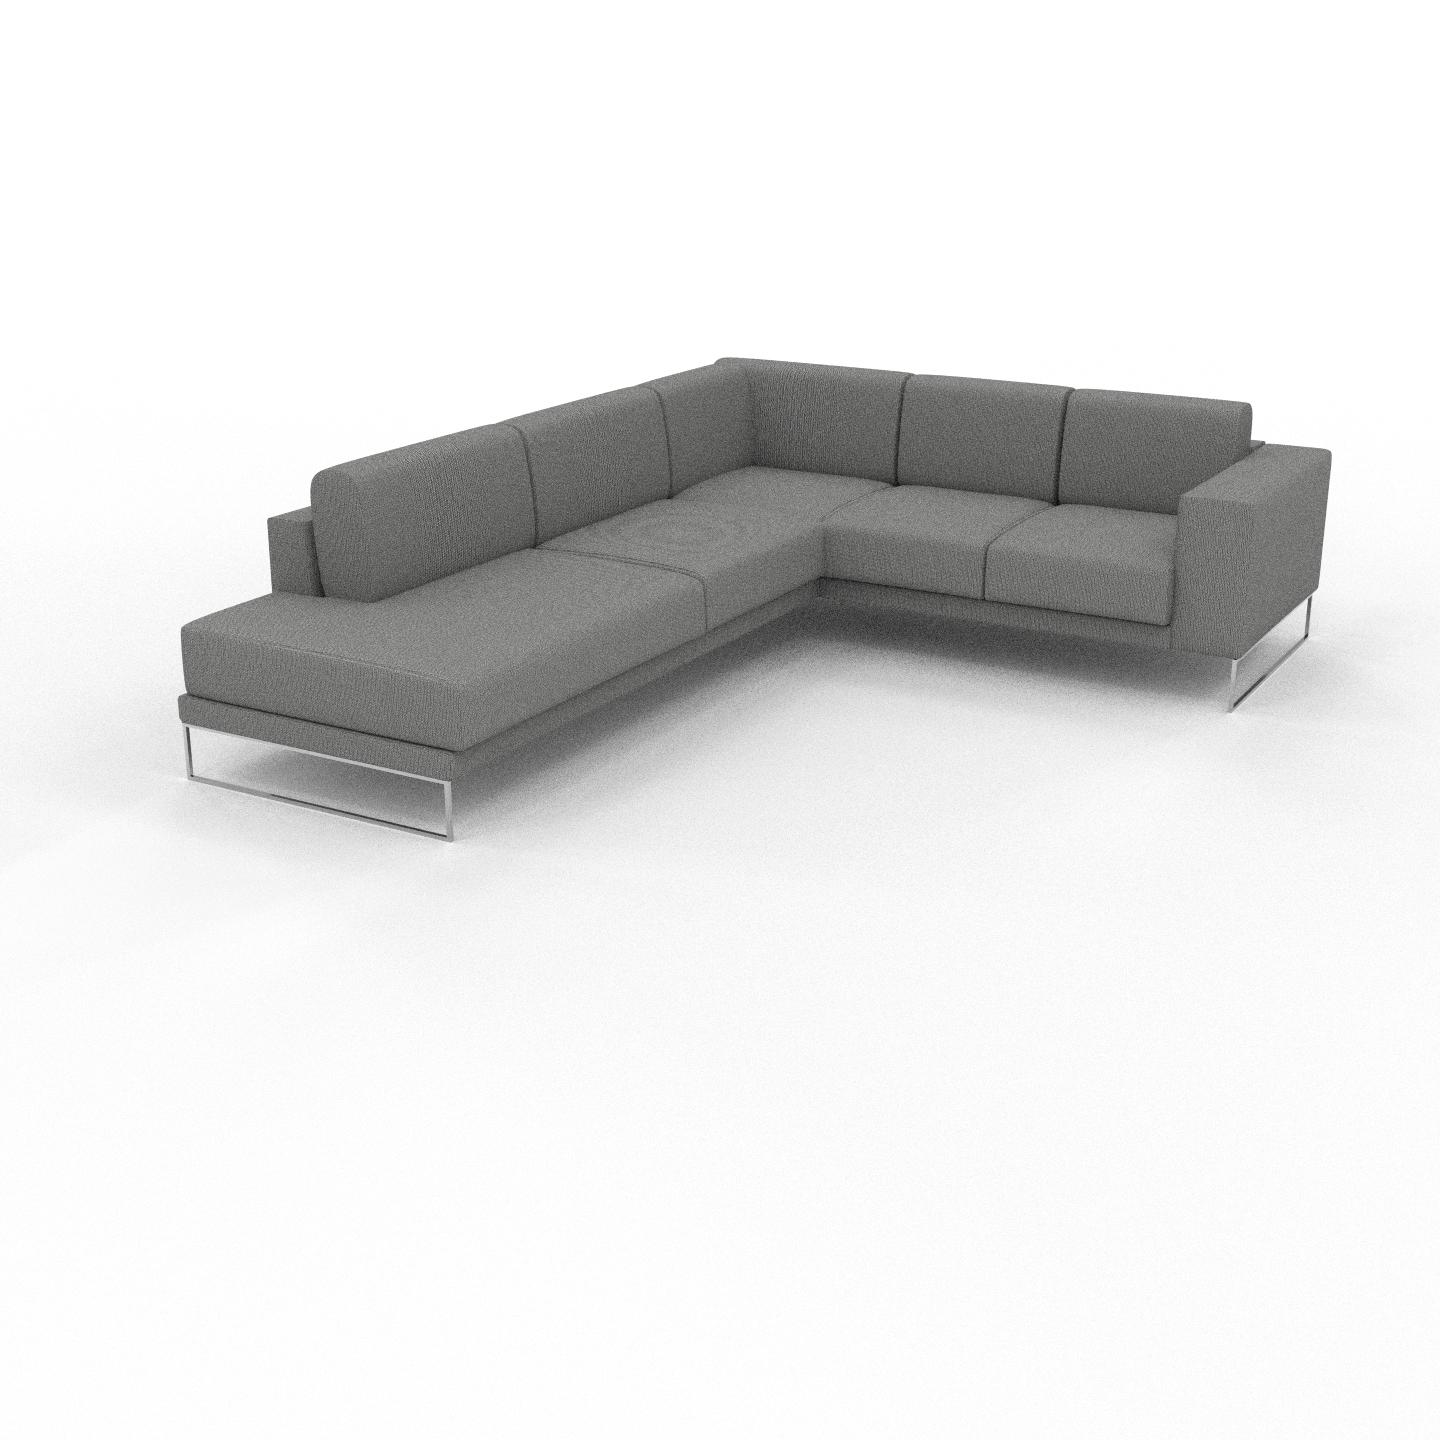 MYCS Ecksofa Granitweiß - Flexible Designer-Polsterecke, L-Form: Beste Qualität, einzigartiges Design - 238 x 81 x 294 cm, konfigurierbar